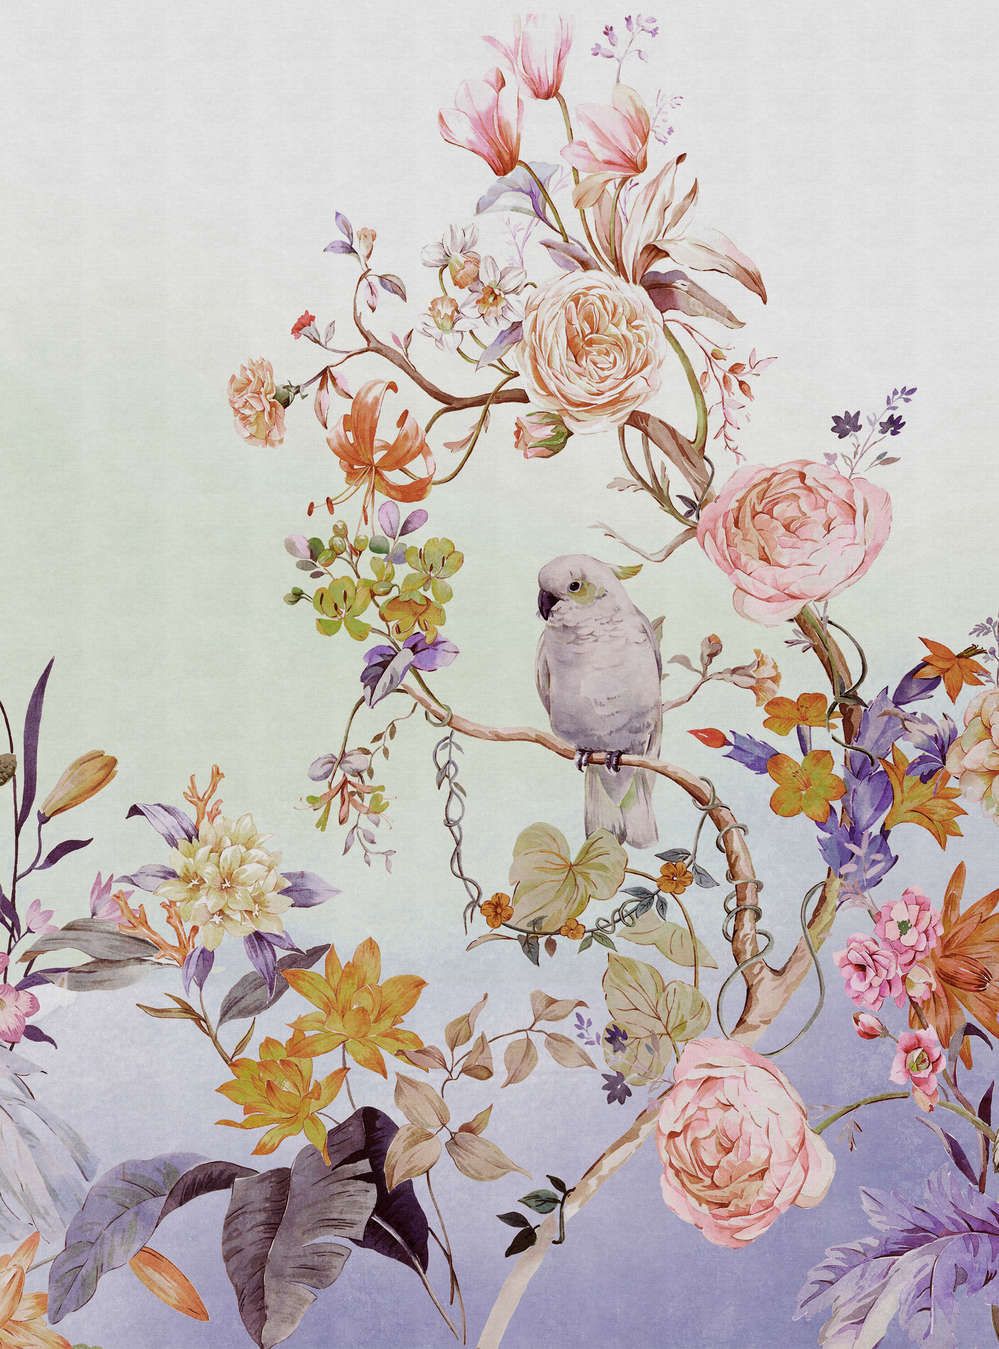             Fotomurali »paradiso« - Uccelli e fiori con sfumatura di colore e texture di lino sullo sfondo - Colorato | Materiali non tessuto liscio e leggermente perlato
        